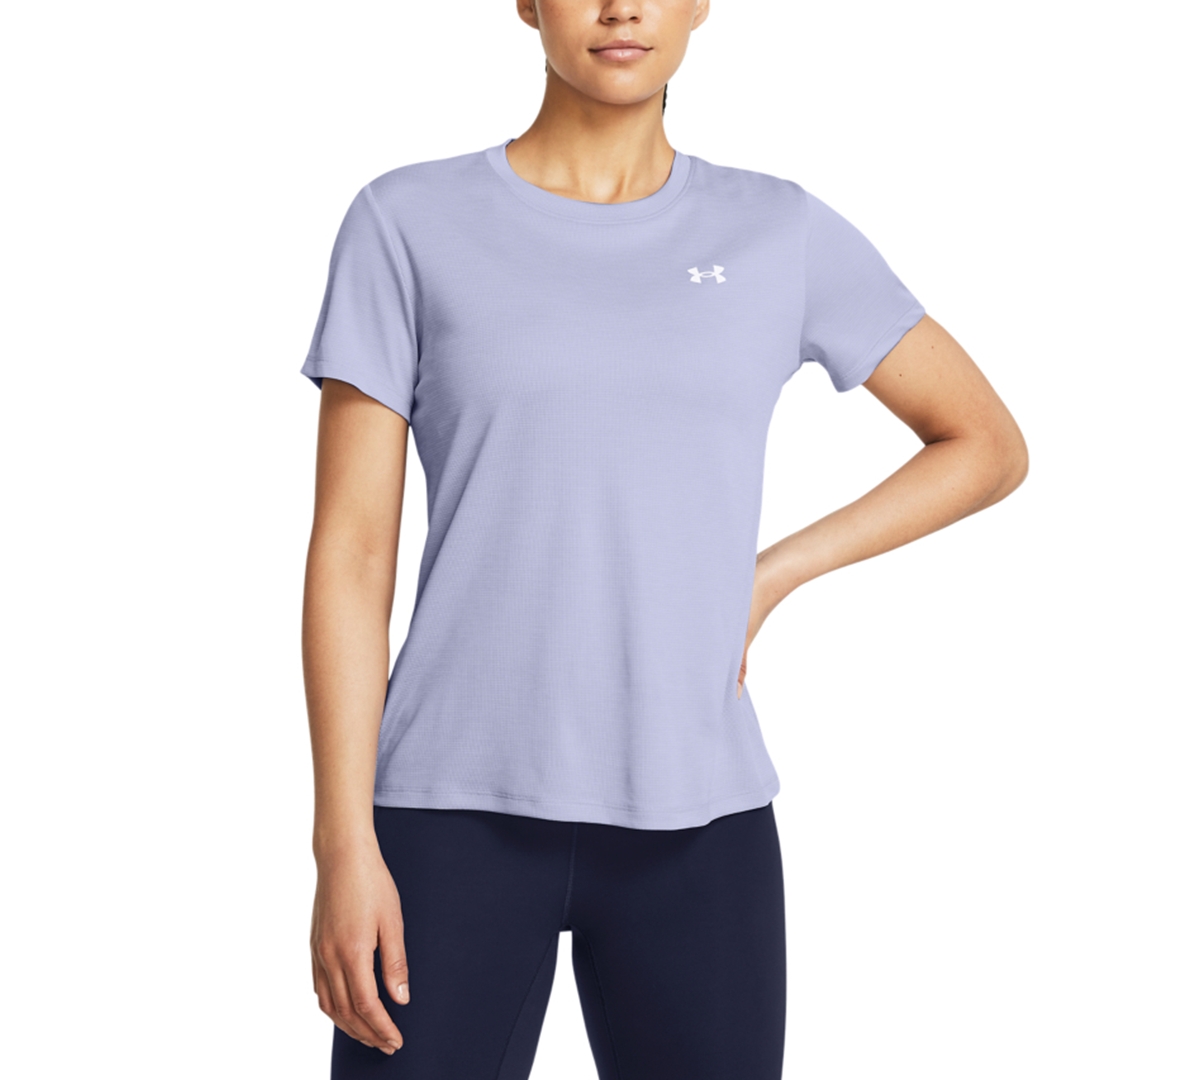 Women's Tech Textured Short-Sleeve T-Shirt - Celeste / / White